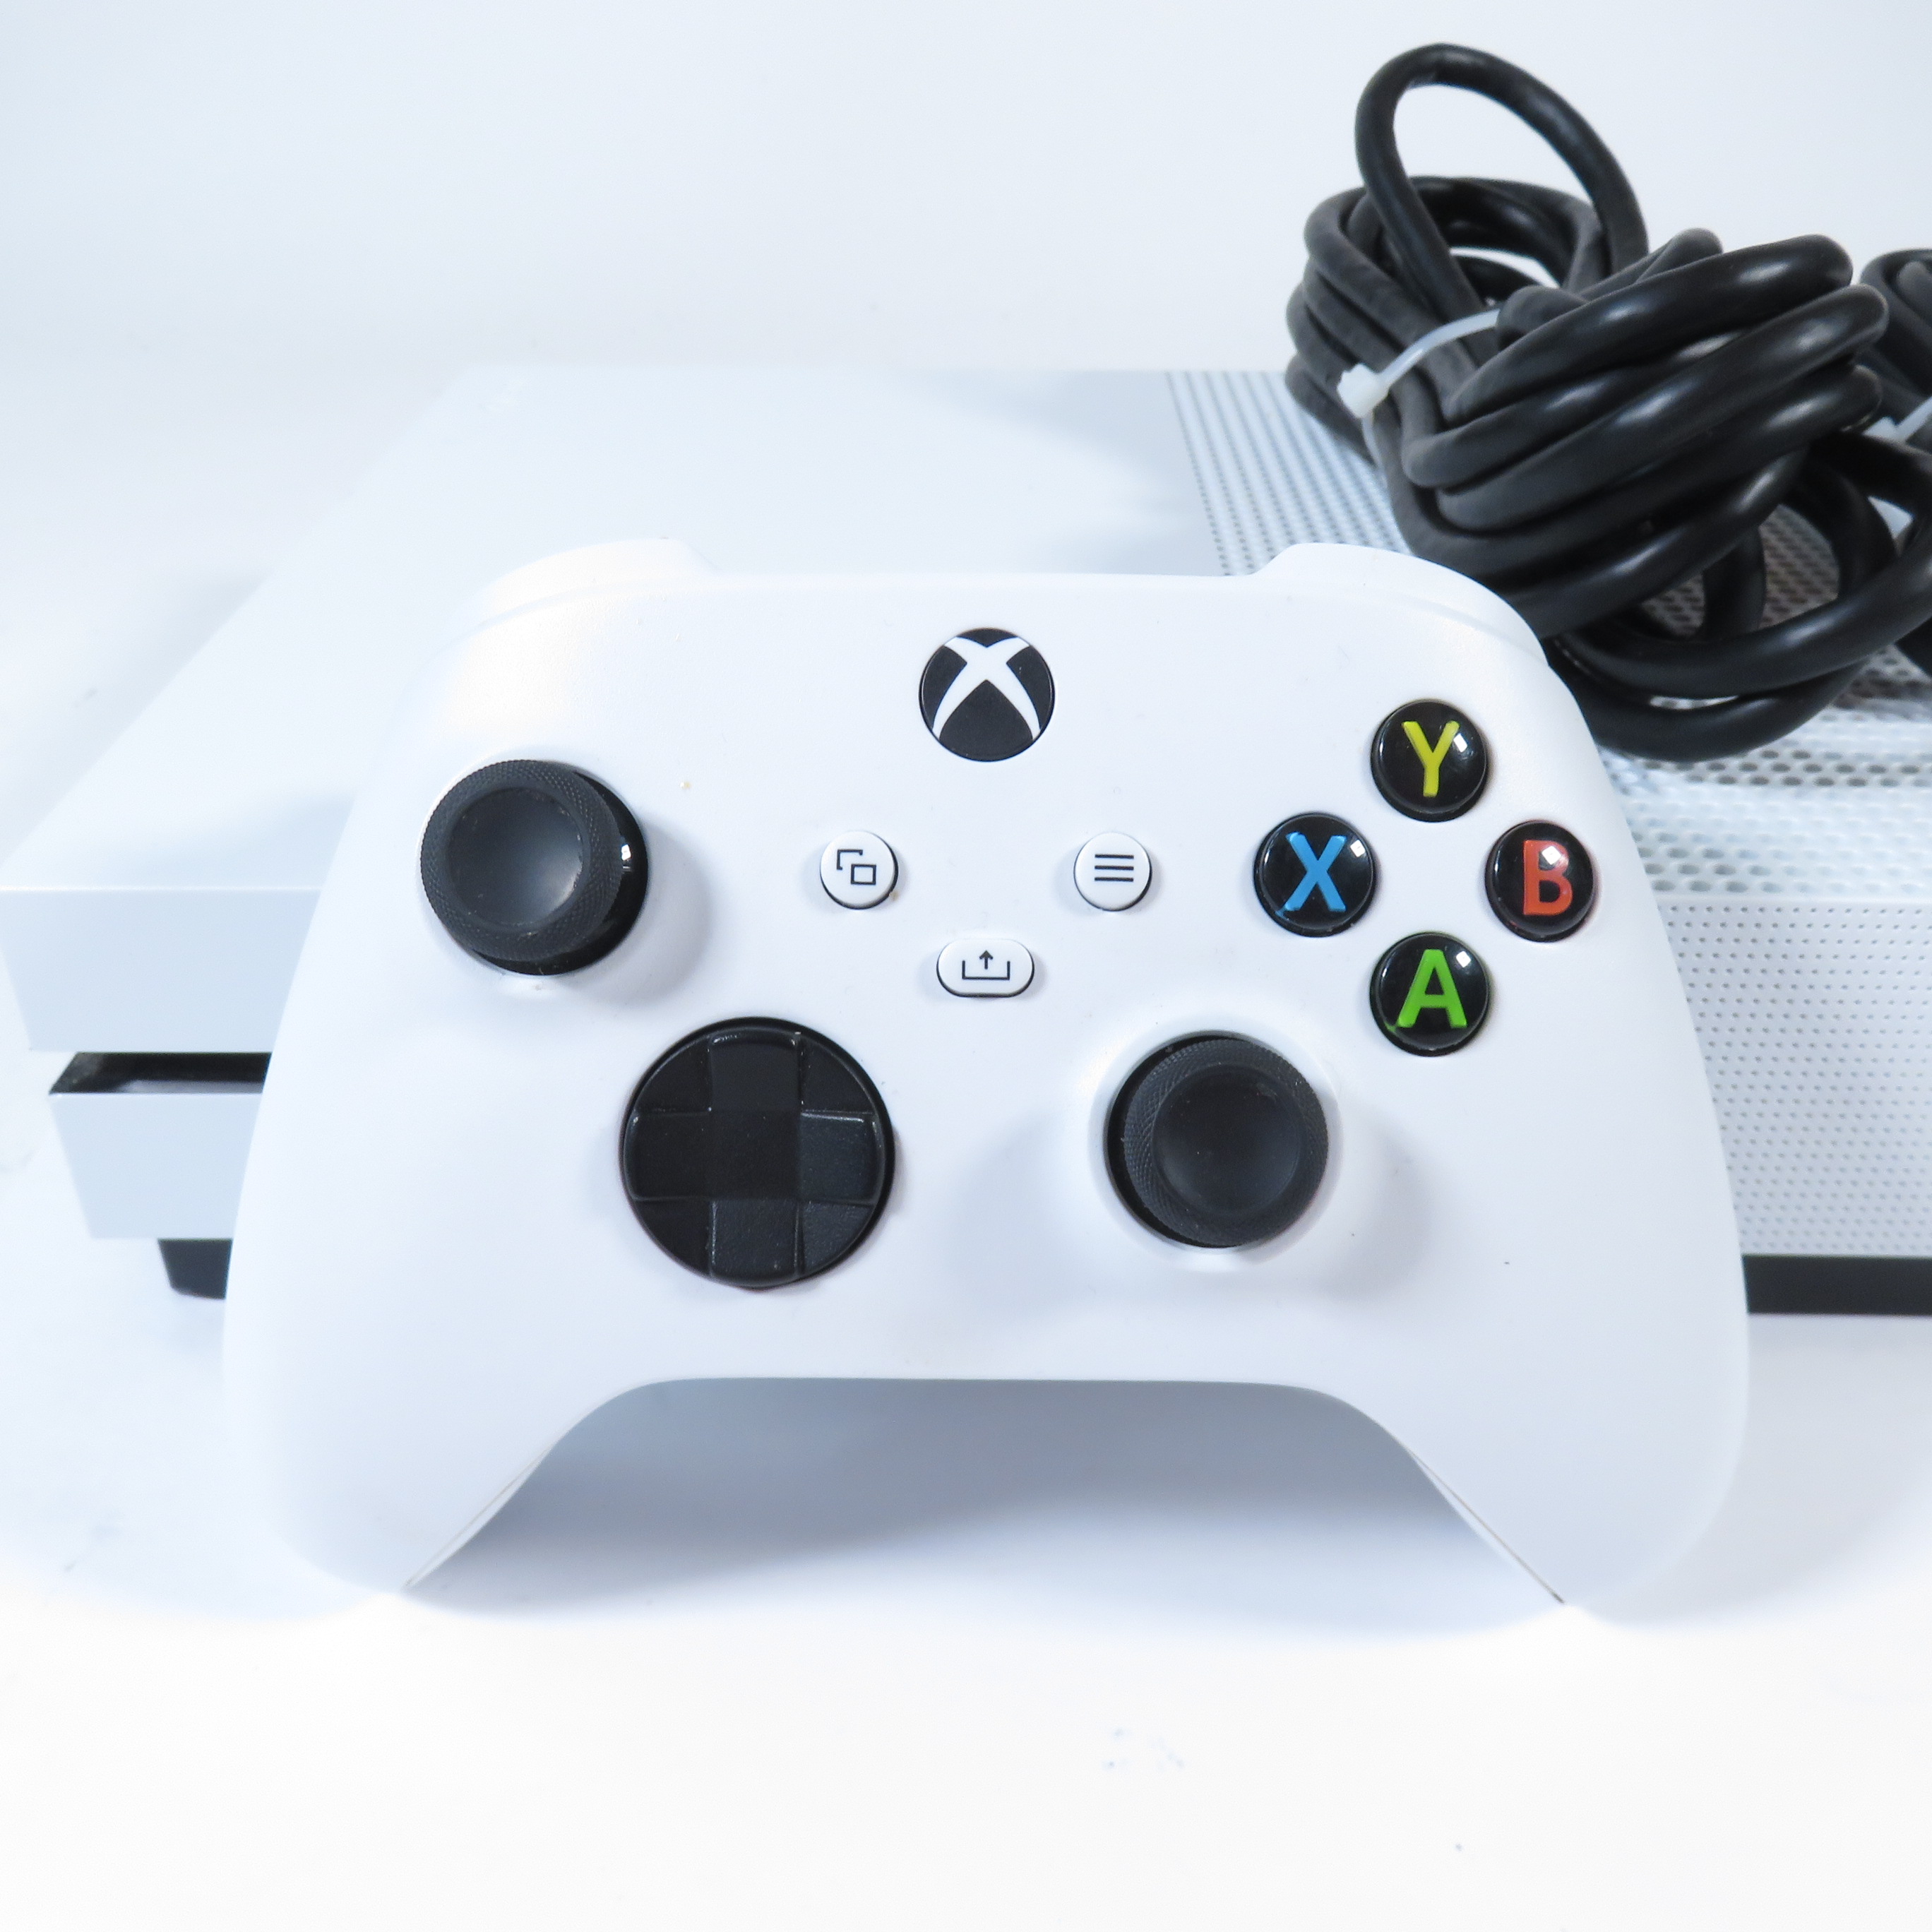 Microsoft Xbox One S Console White 1TB | GameStop